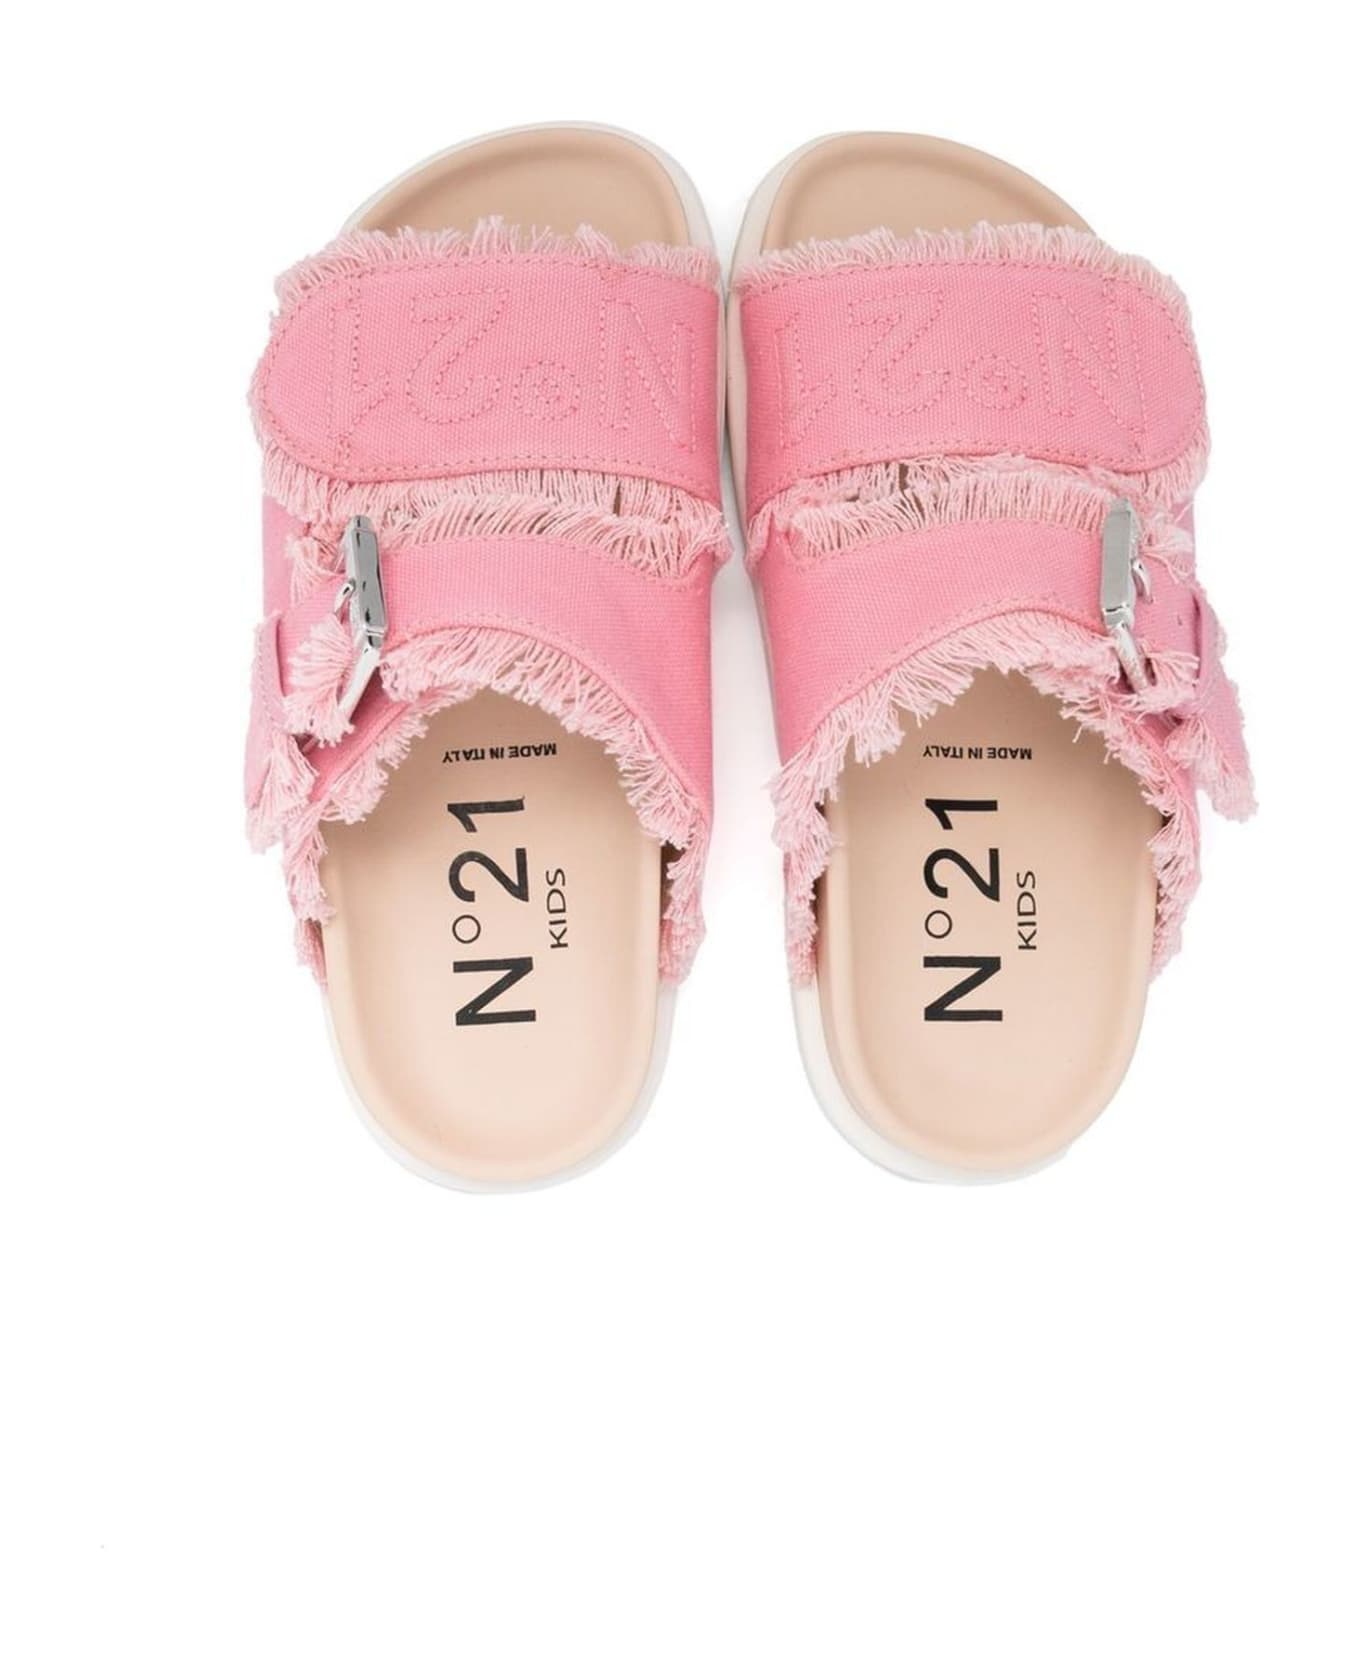 N.21 N°21 Sandals Pink - Pink